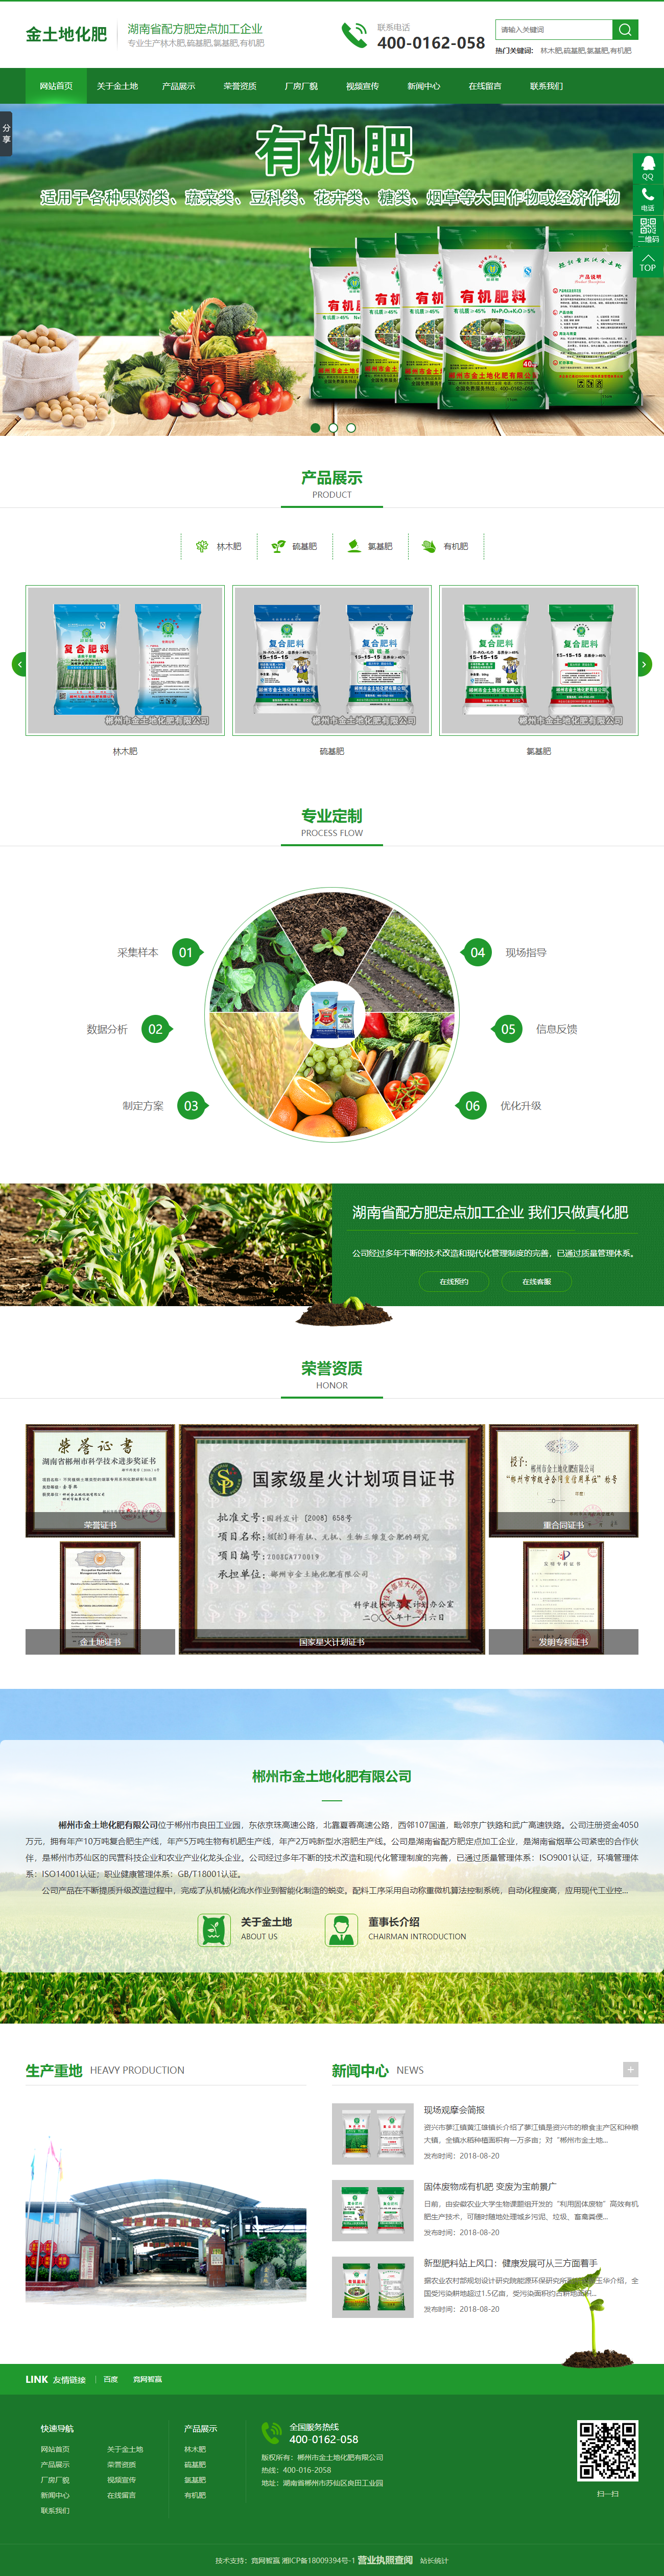 郴州市金土地化肥有限公司网站案例